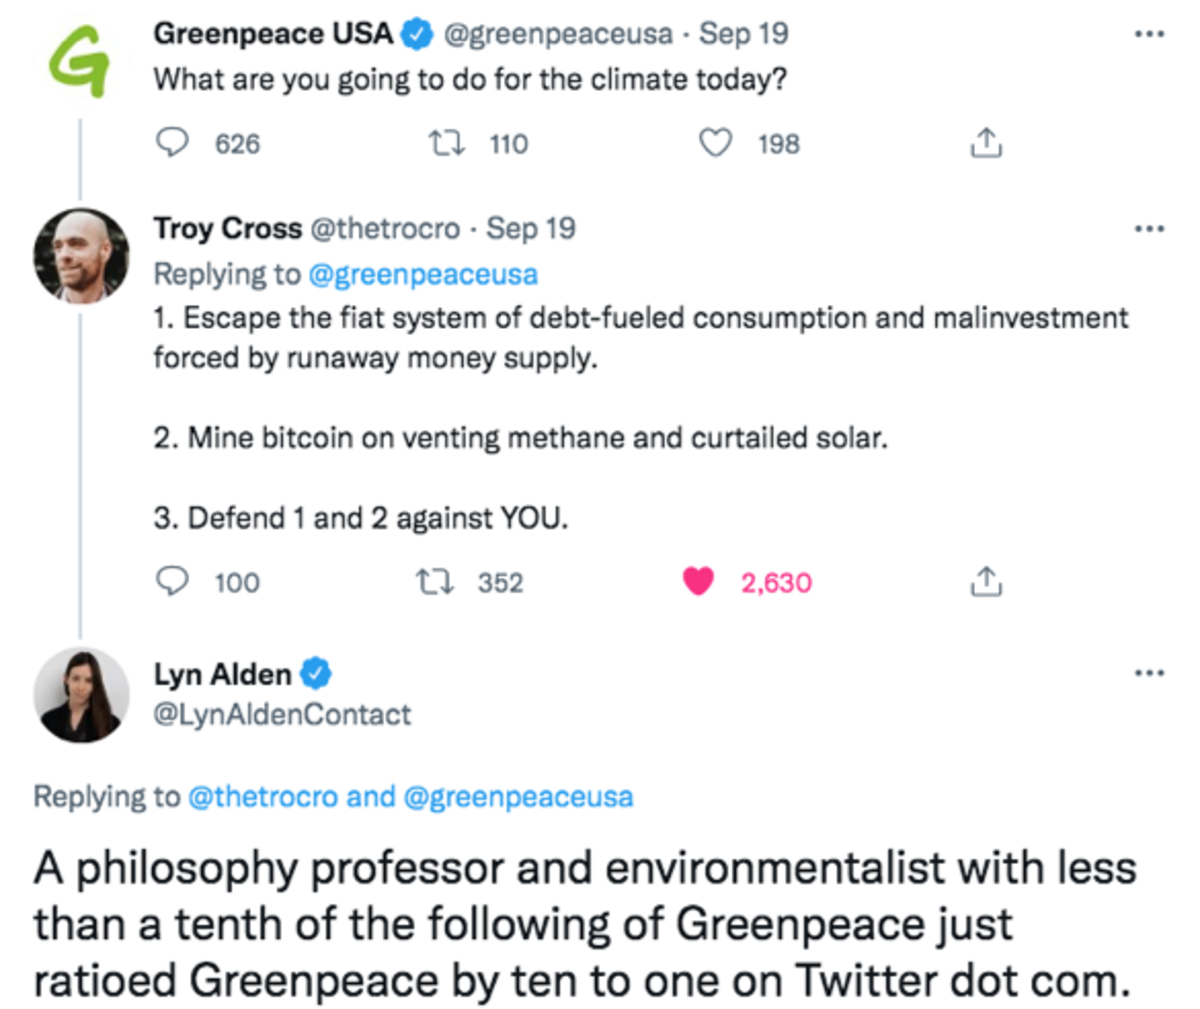 المعلومات المضللة الأساسية التي تم الكشف عنها خلال حملة "تغيير الرمز" التي أطلقتها منظمة Greenpeace USA لم تساعد إلا في حشد مجتمع Bitcoin.